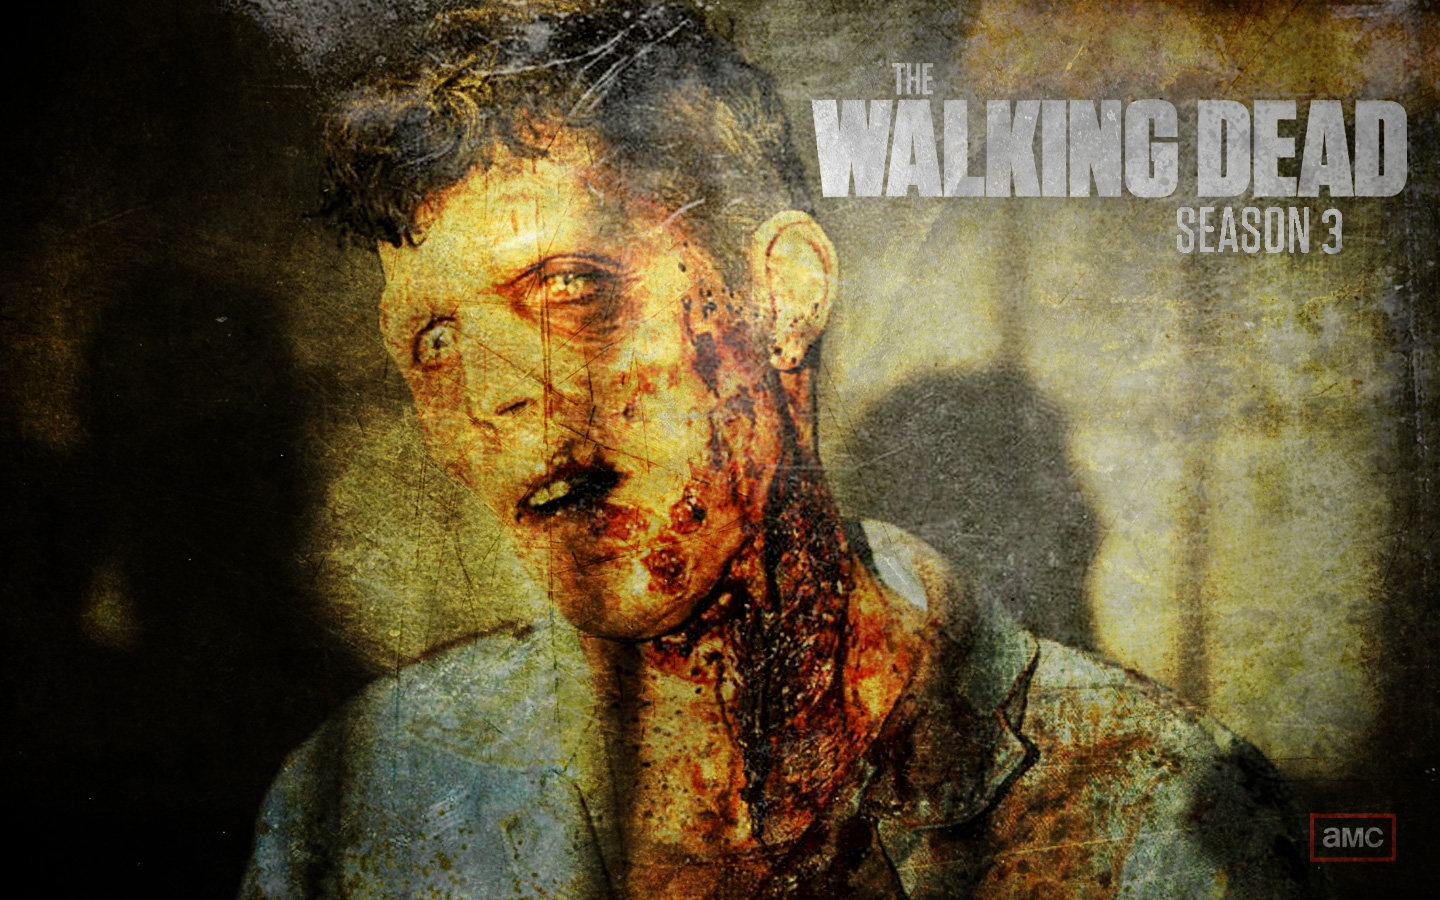 The Walking Dead Season 3 Wallpaper 1440x900 ImageBankbiz